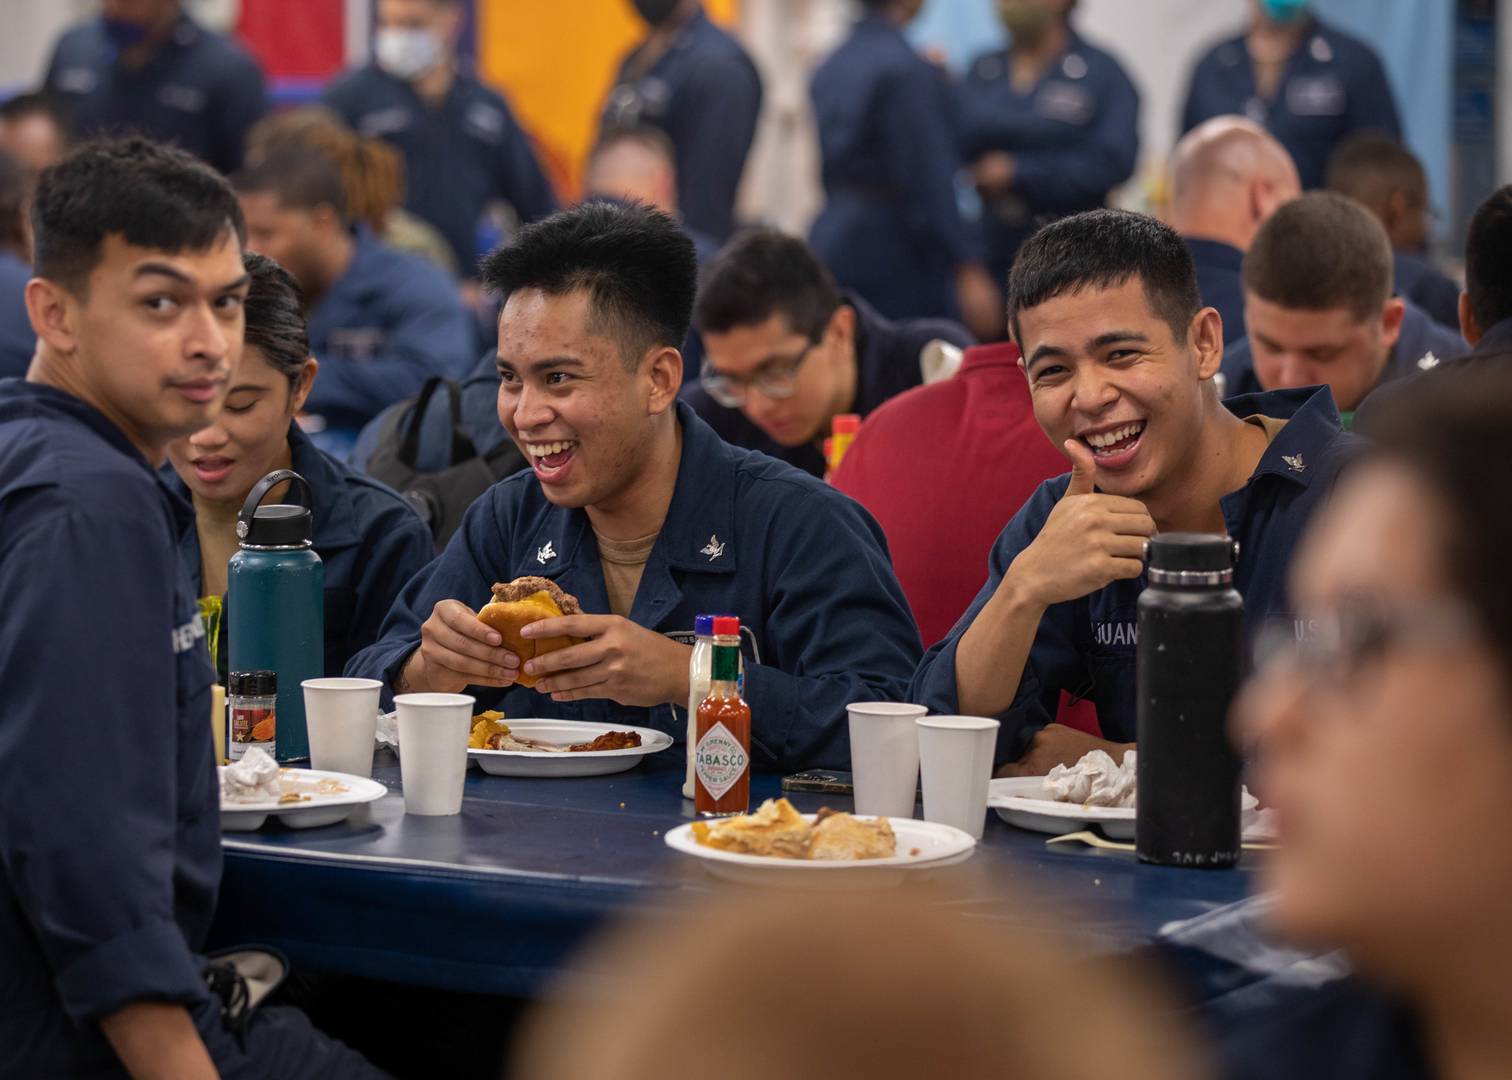 Моряки десантно-штурмового корабля Bataan (LHD 5) ВМС США демонстрируют хорошее настроение во время обеда в корабельной столовой